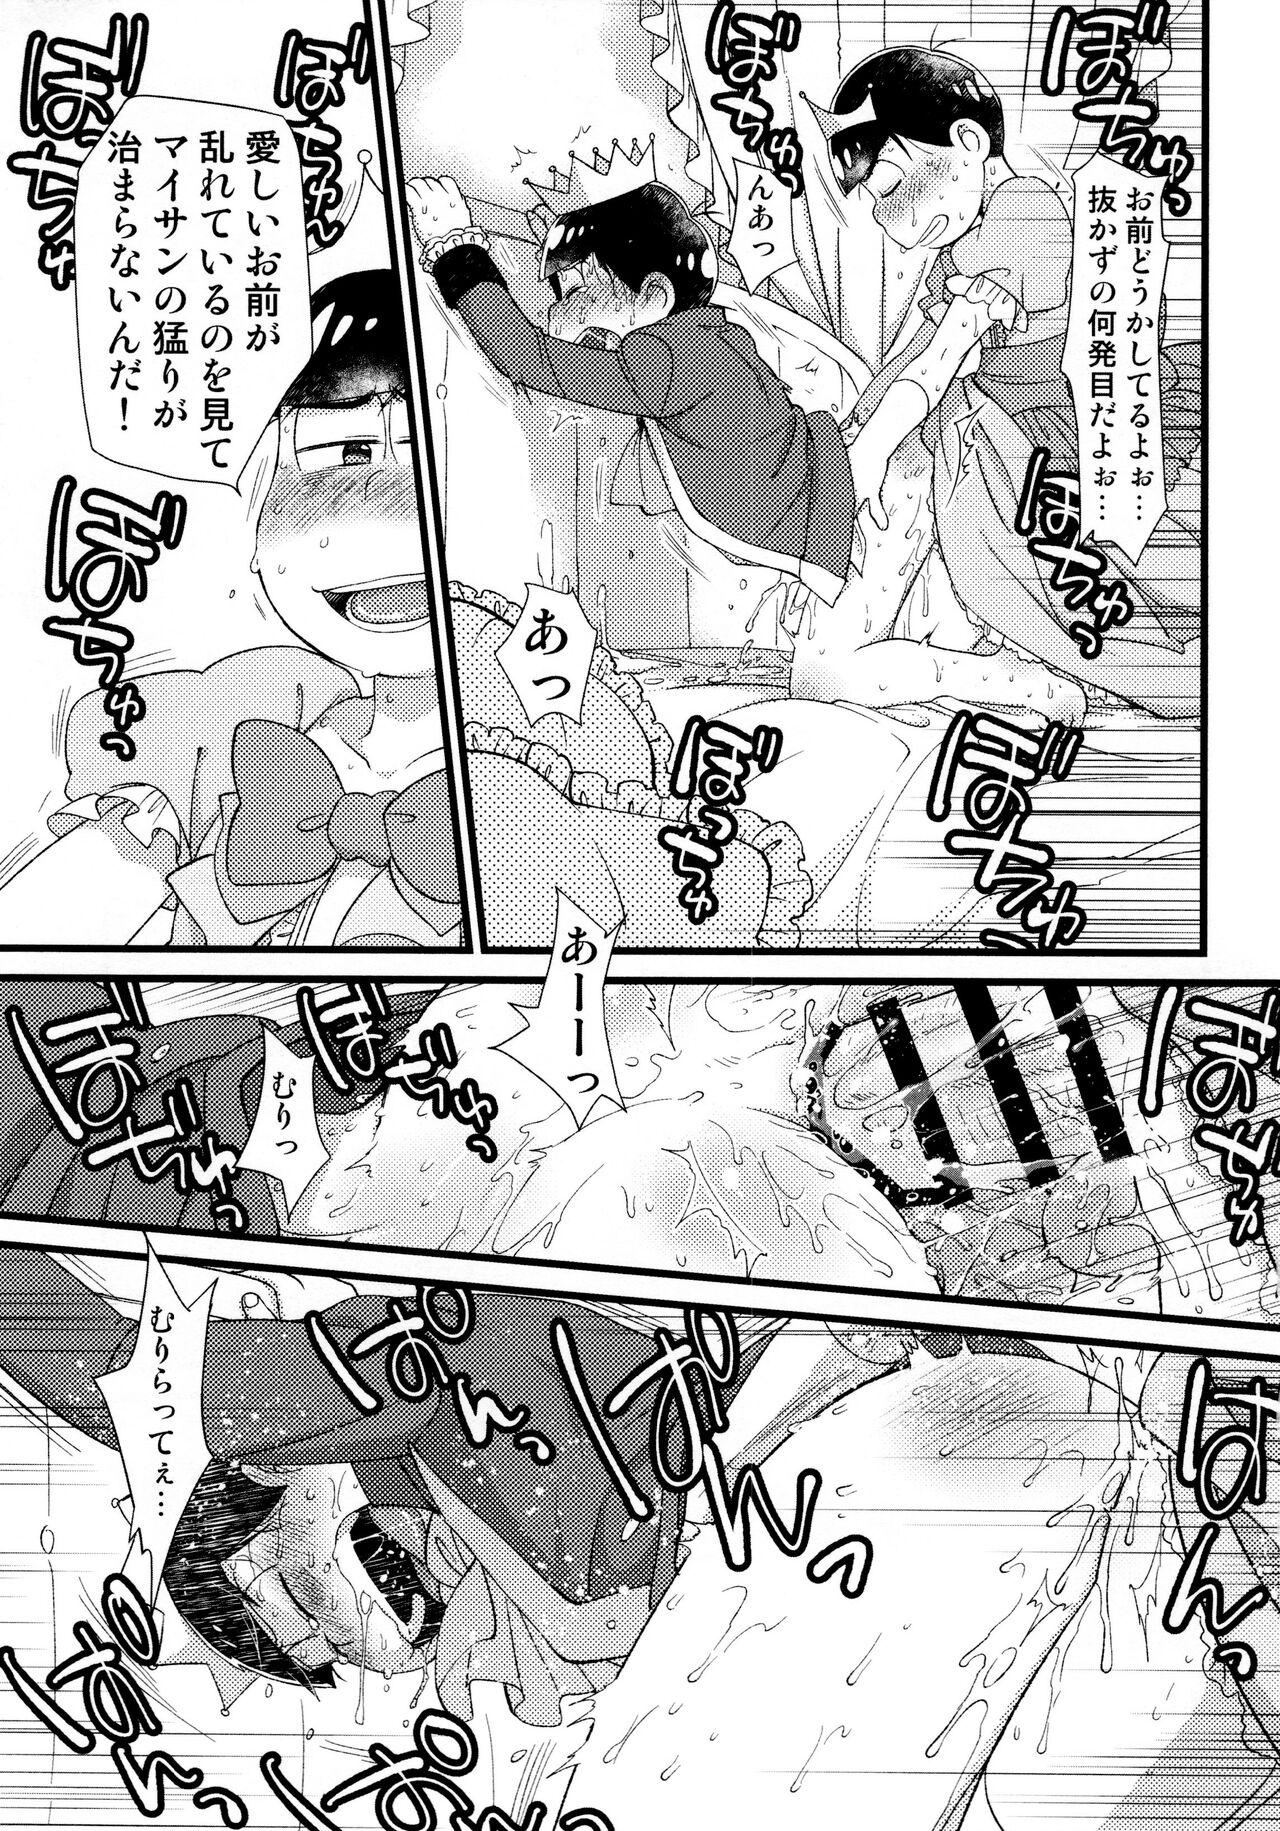 3some Anata to zutto asa kara asamade - Osomatsu san Dominate - Page 4